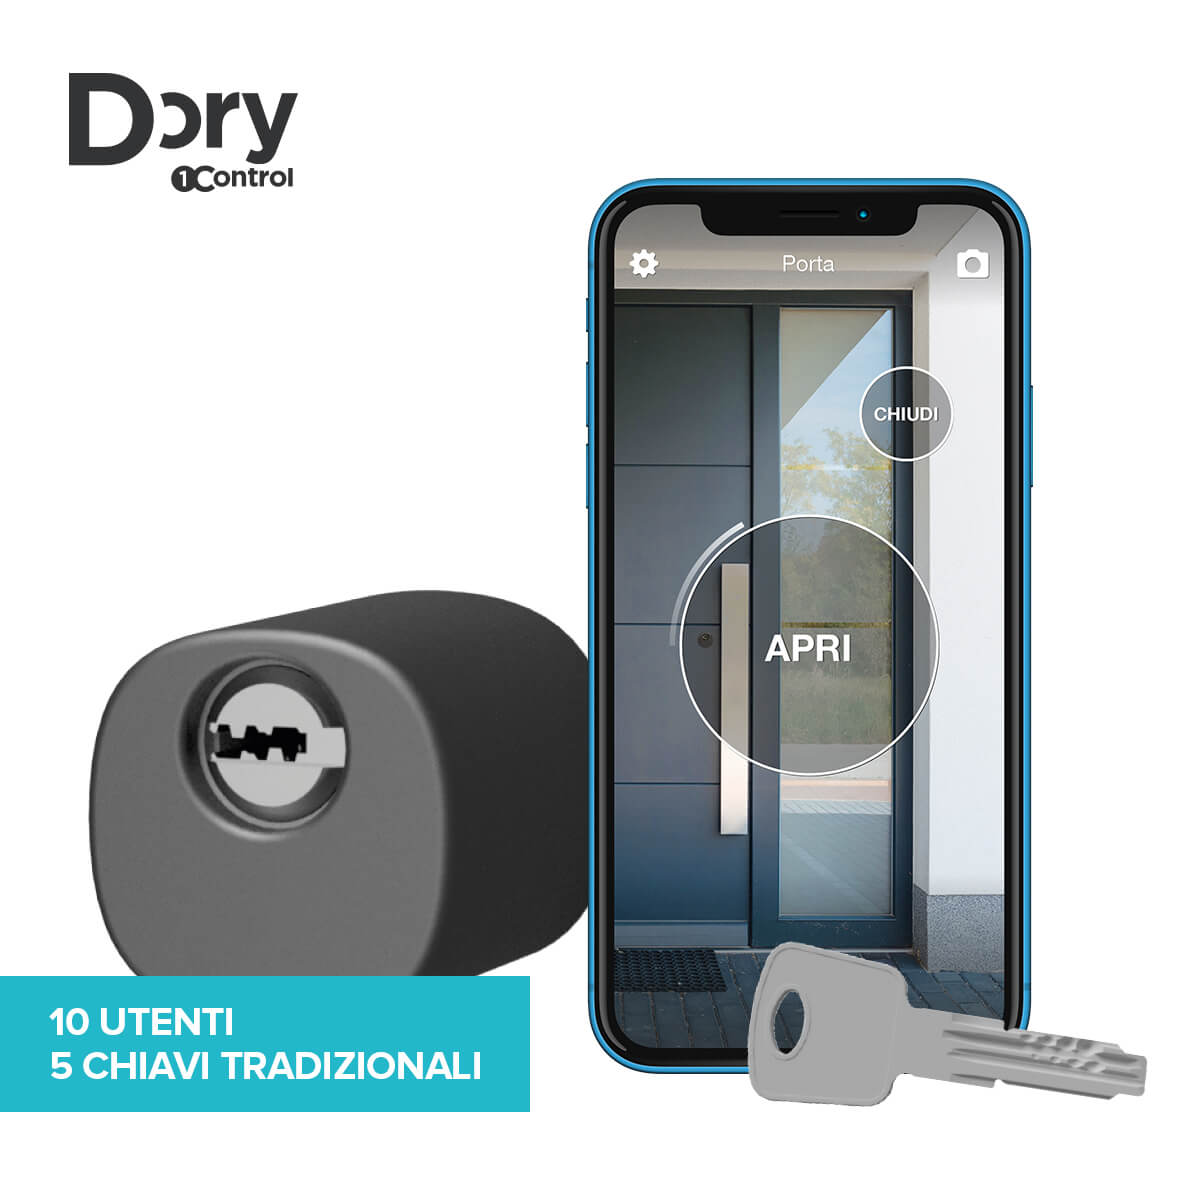 1Control DORY serratura elettronica smart home